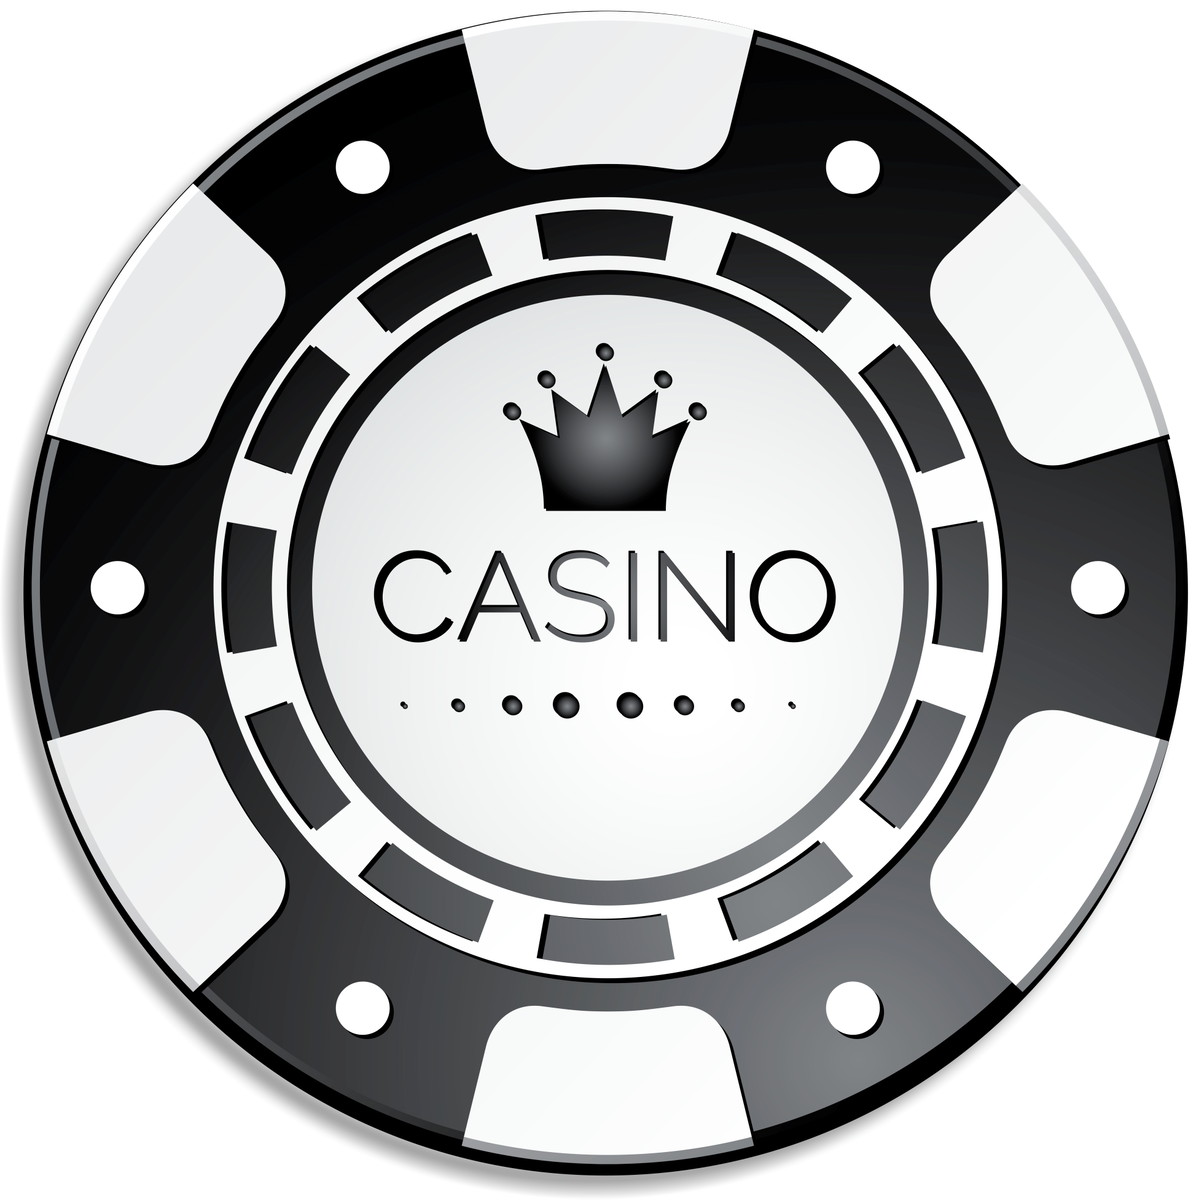 Skaffa fram 50 Juliga Kontan Spins gratis bingo Inte me Omsättningskrav Hos Maria Casino